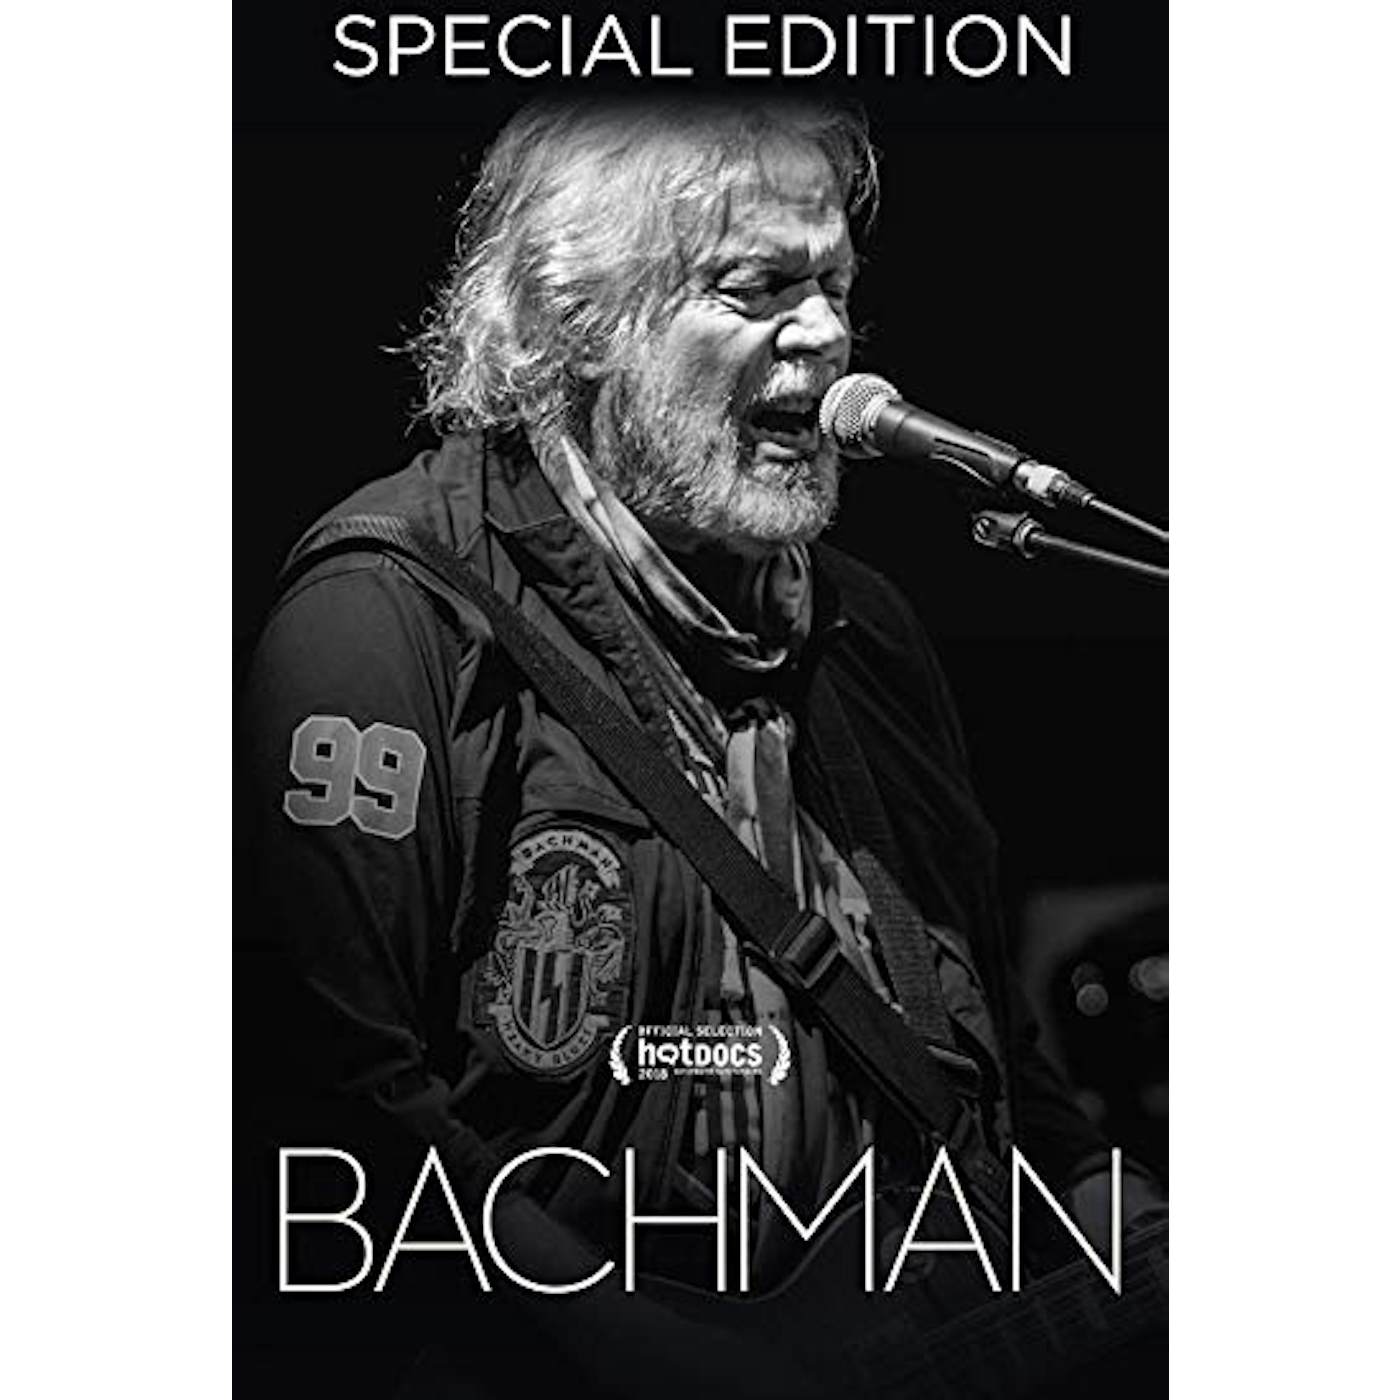 Randy Bachman BACHMAN DVD